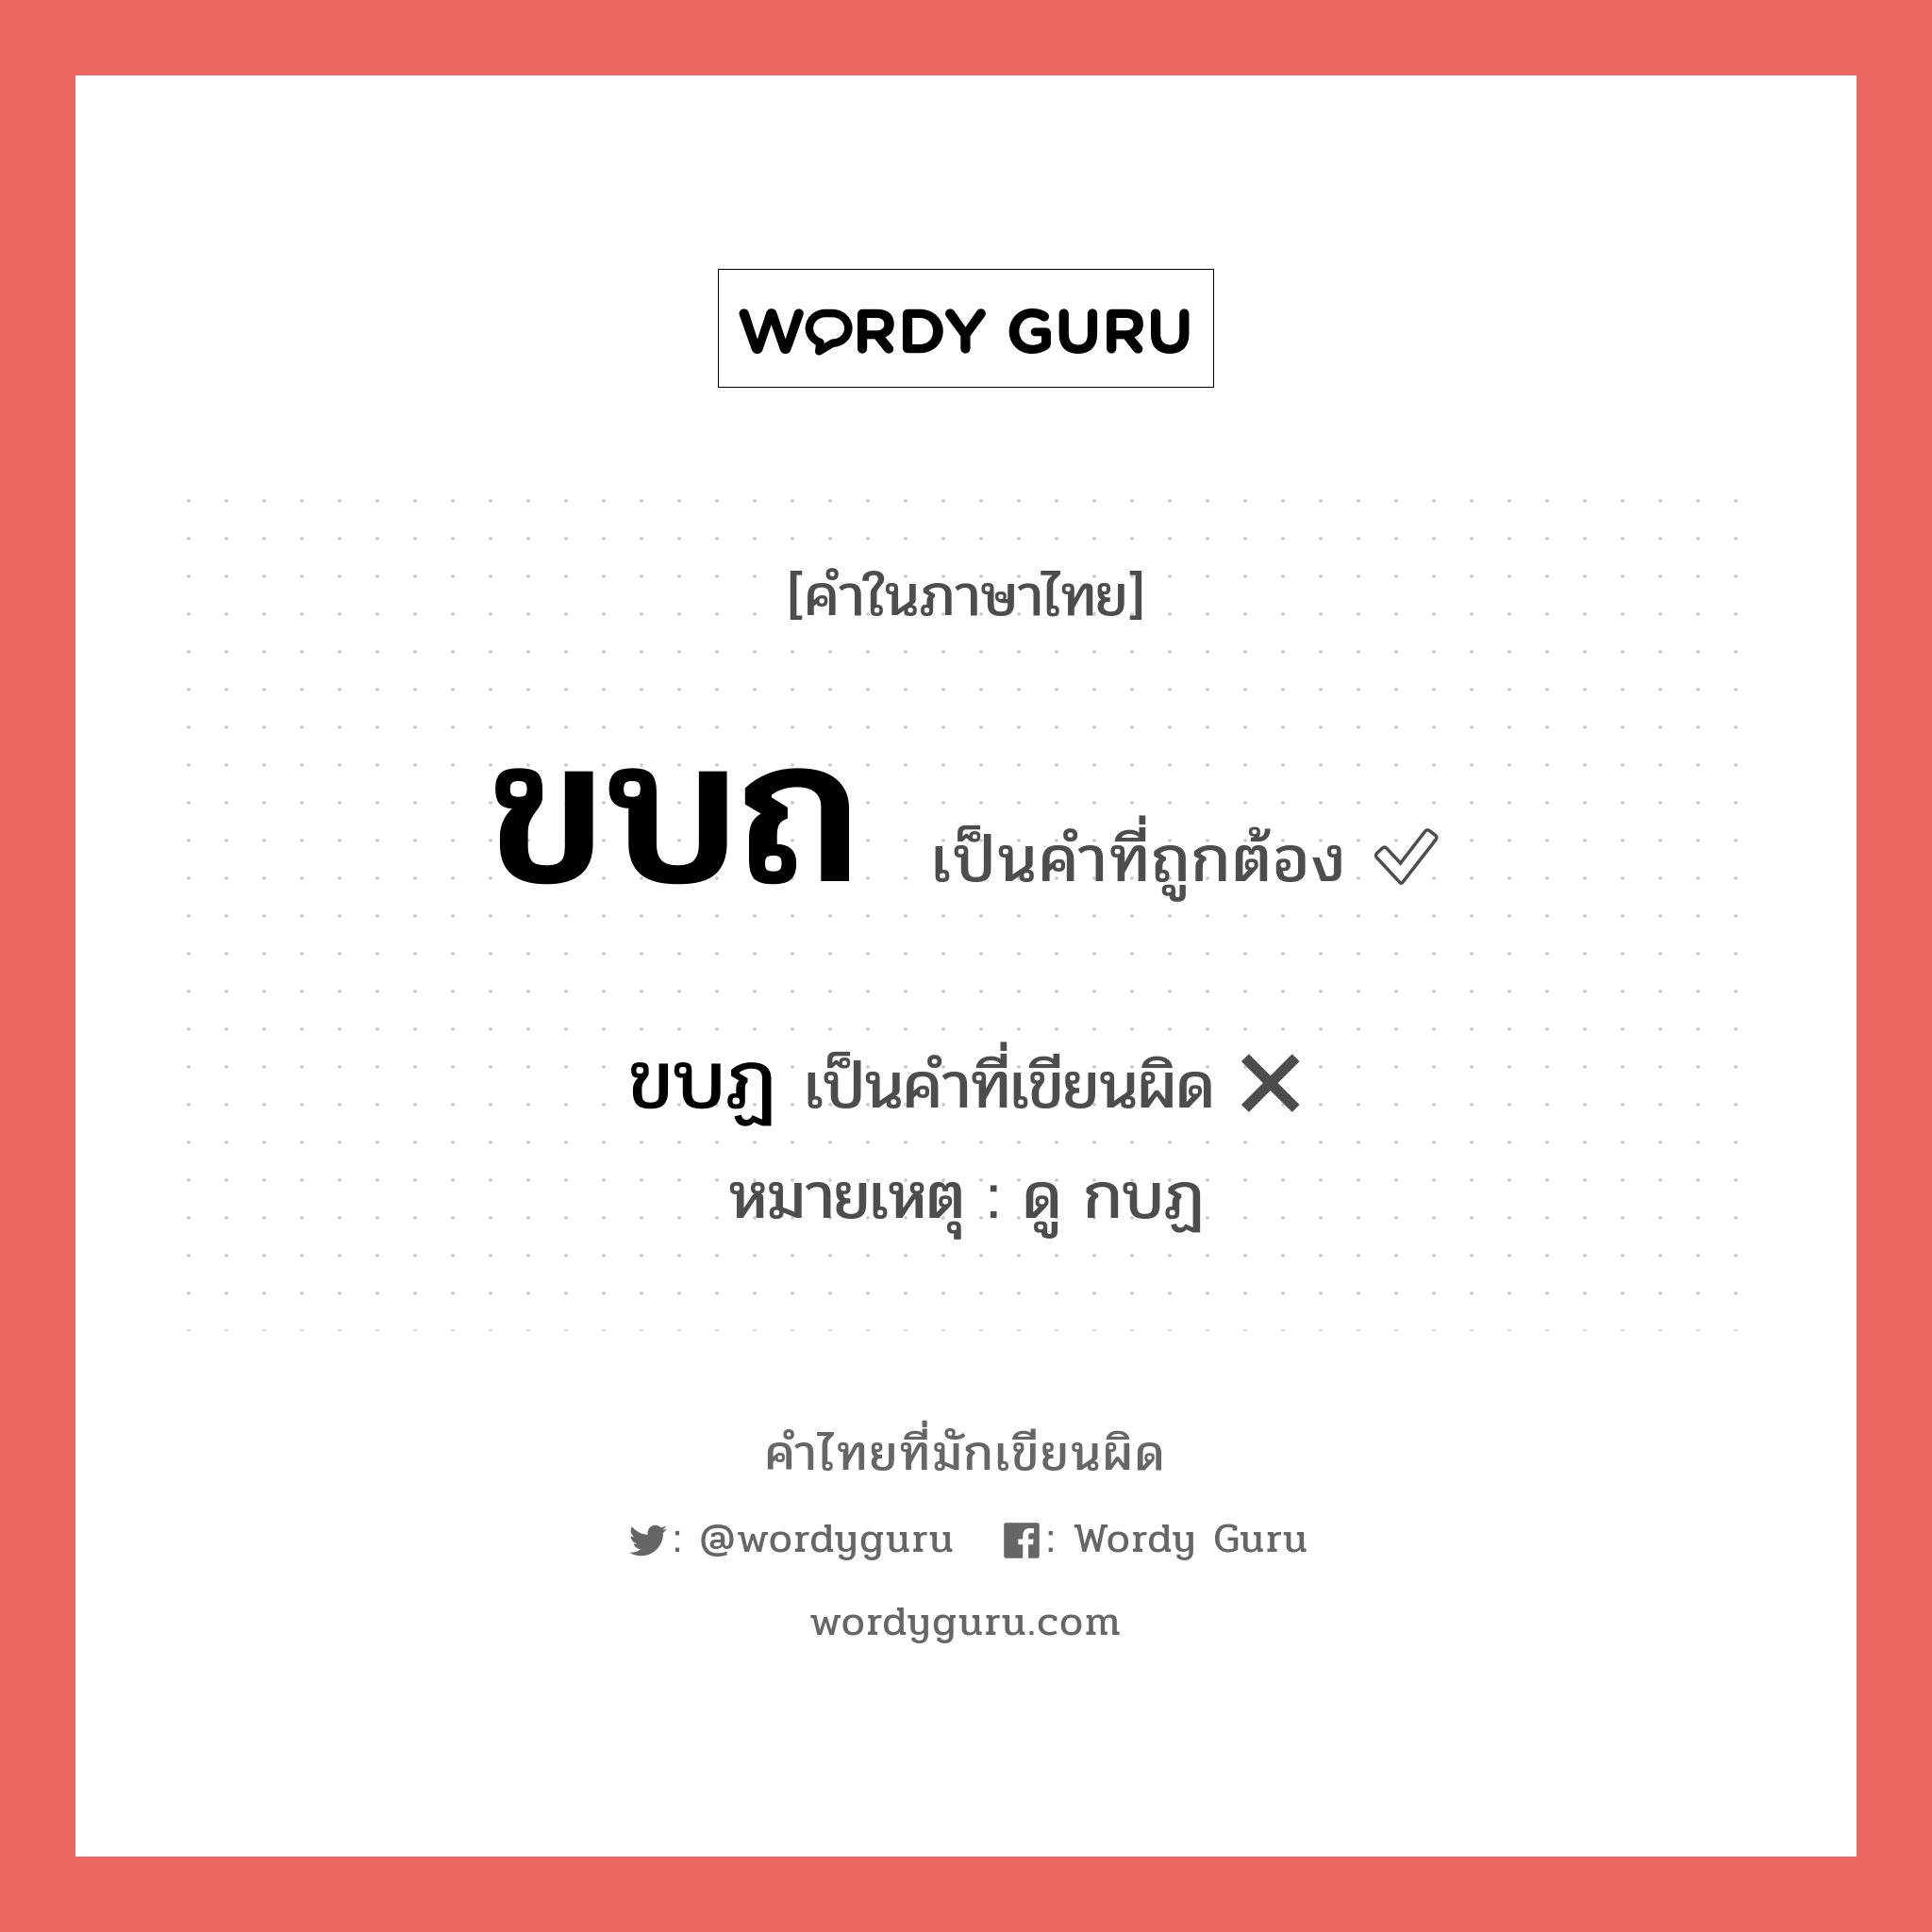 ขบถ หรือ ขบฏ คำไหนเขียนถูก?, คำในภาษาไทยที่มักเขียนผิด ขบถ คำที่ผิด ❌ ขบฏ หมายเหตุ ดู กบฏ